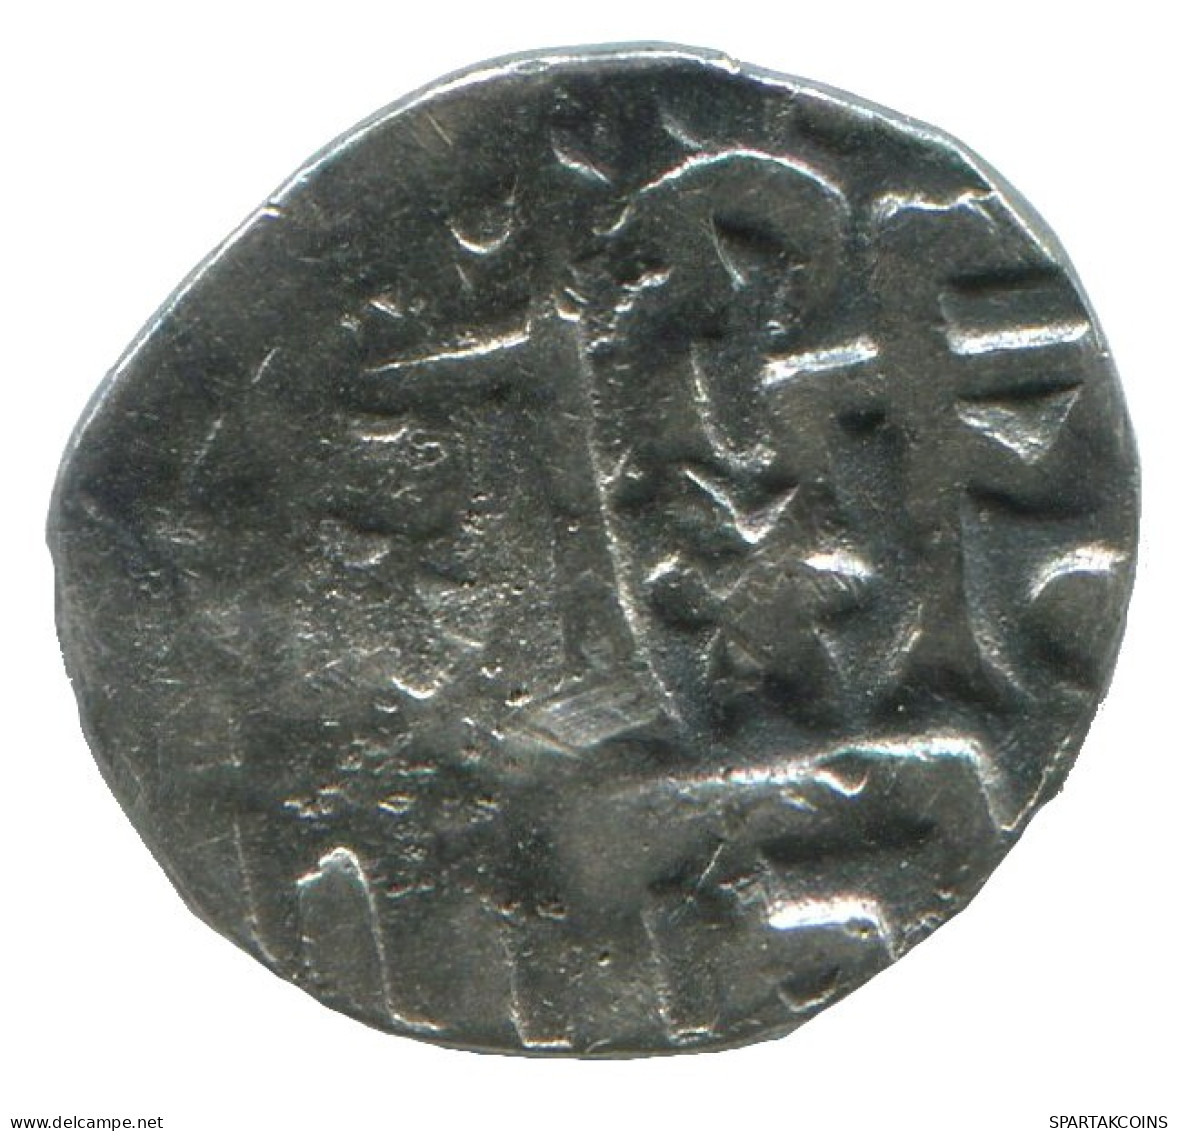 GOLDEN HORDE Silver Dirham Medieval Islamic Coin 0.9g/13mm #NNN2032.8.E.A - Islamiche